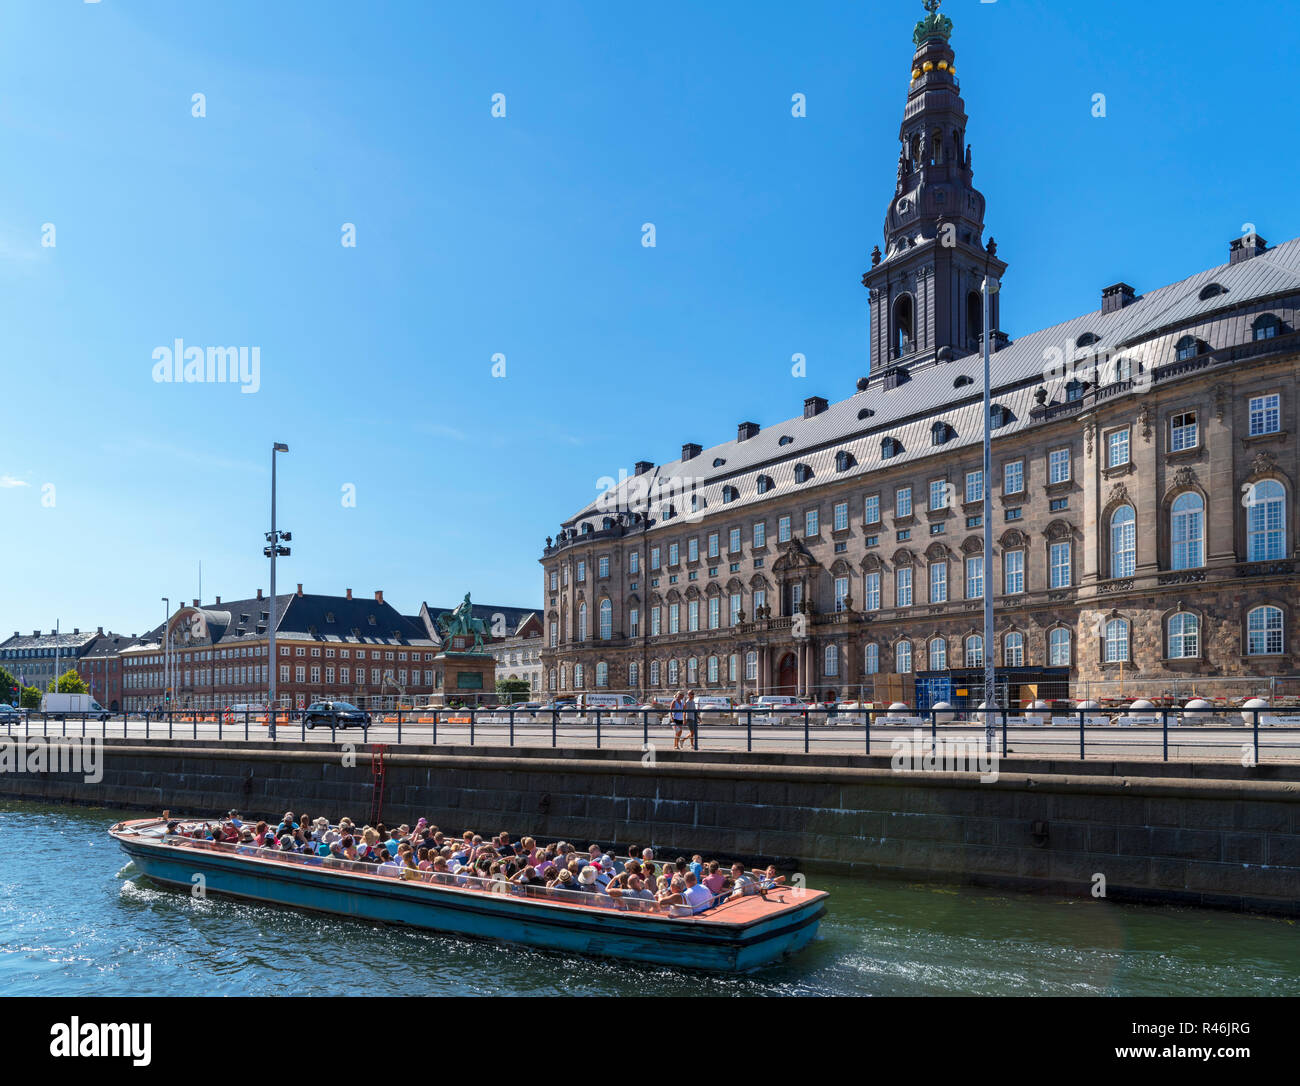 Croisière sur le canal de Slotholmens avec fente de Christiansborg Christiansborg (Palace), Copenhague, Danemark Banque D'Images